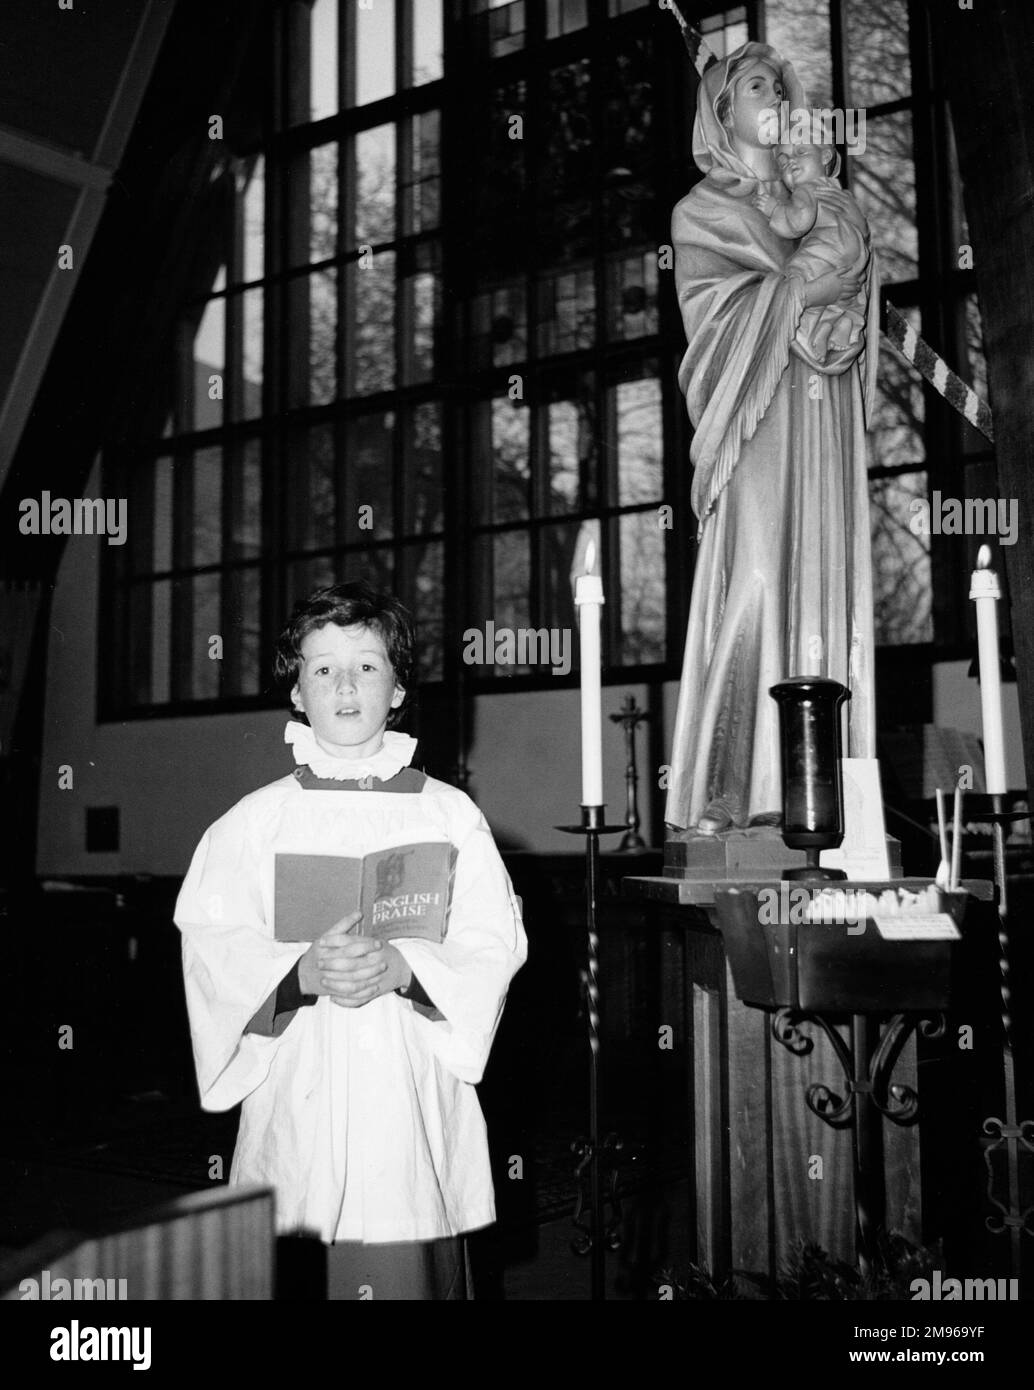 Un ragazzo che canta da solo davanti a una moderna vetrata presso la Chiesa di Salfords, Horley, Surrey. Ha in mano un libro intitolato "English lode”. Accanto a lui si trova una statua della Vergine Maria e del Bambino. Foto Stock